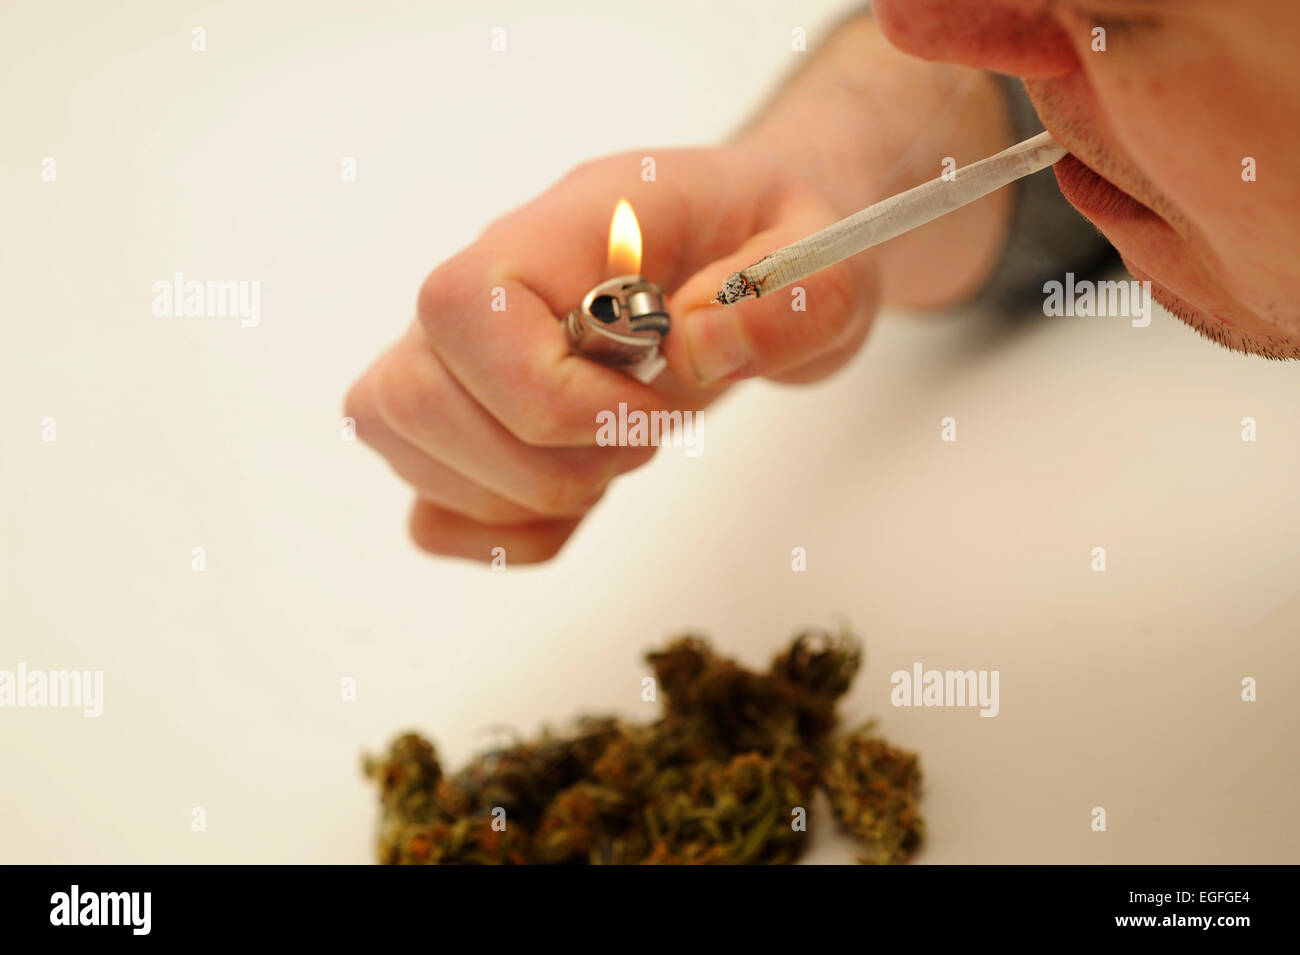 Medicinal Marijuana Joint being Smoked Stock Photo